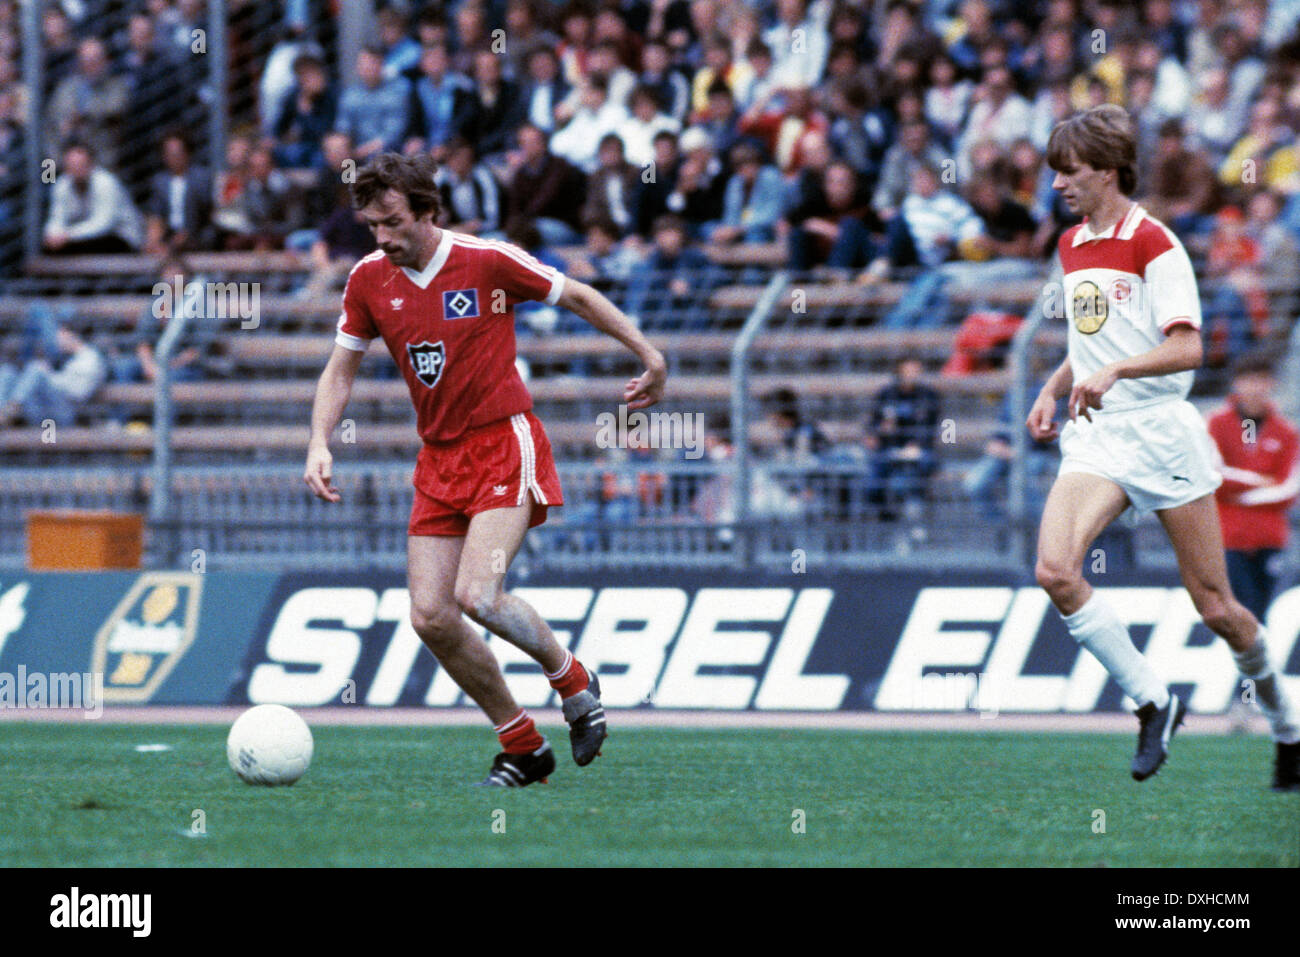 Calcio, Bundesliga, 1983/1984, Reno Stadium, Fortuna Duesseldorf contro Hamburger SV 2:3, scena del match, Juergen Groh (HSV) in possesso palla, destra Manfred Bockenfeld (Fortuna) Foto Stock